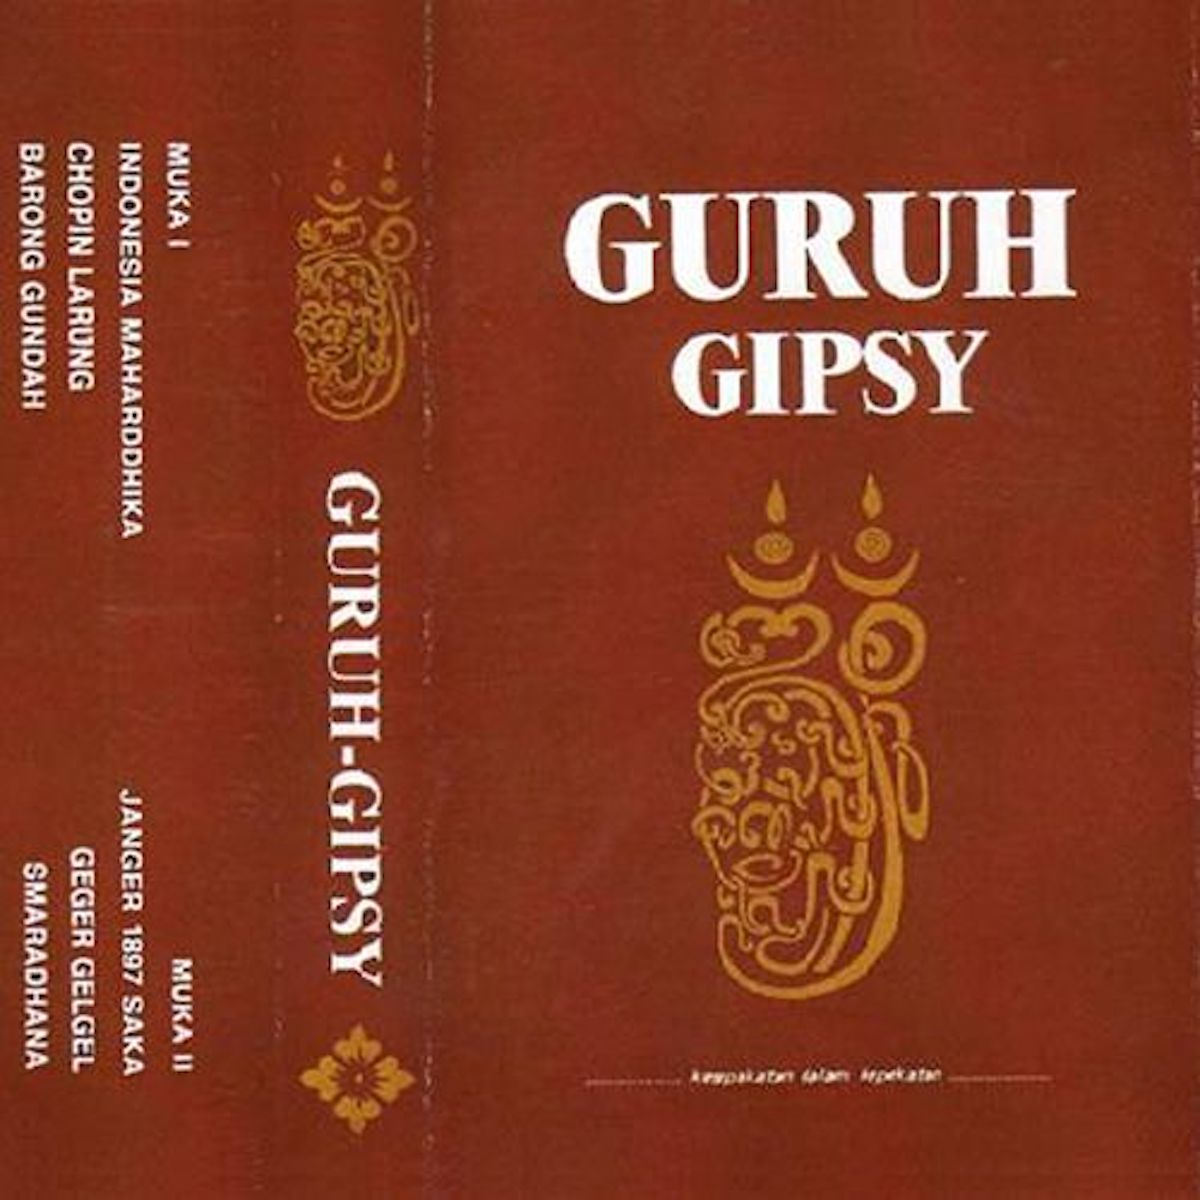 Guruh Gipsy『Guruh Gipsy』